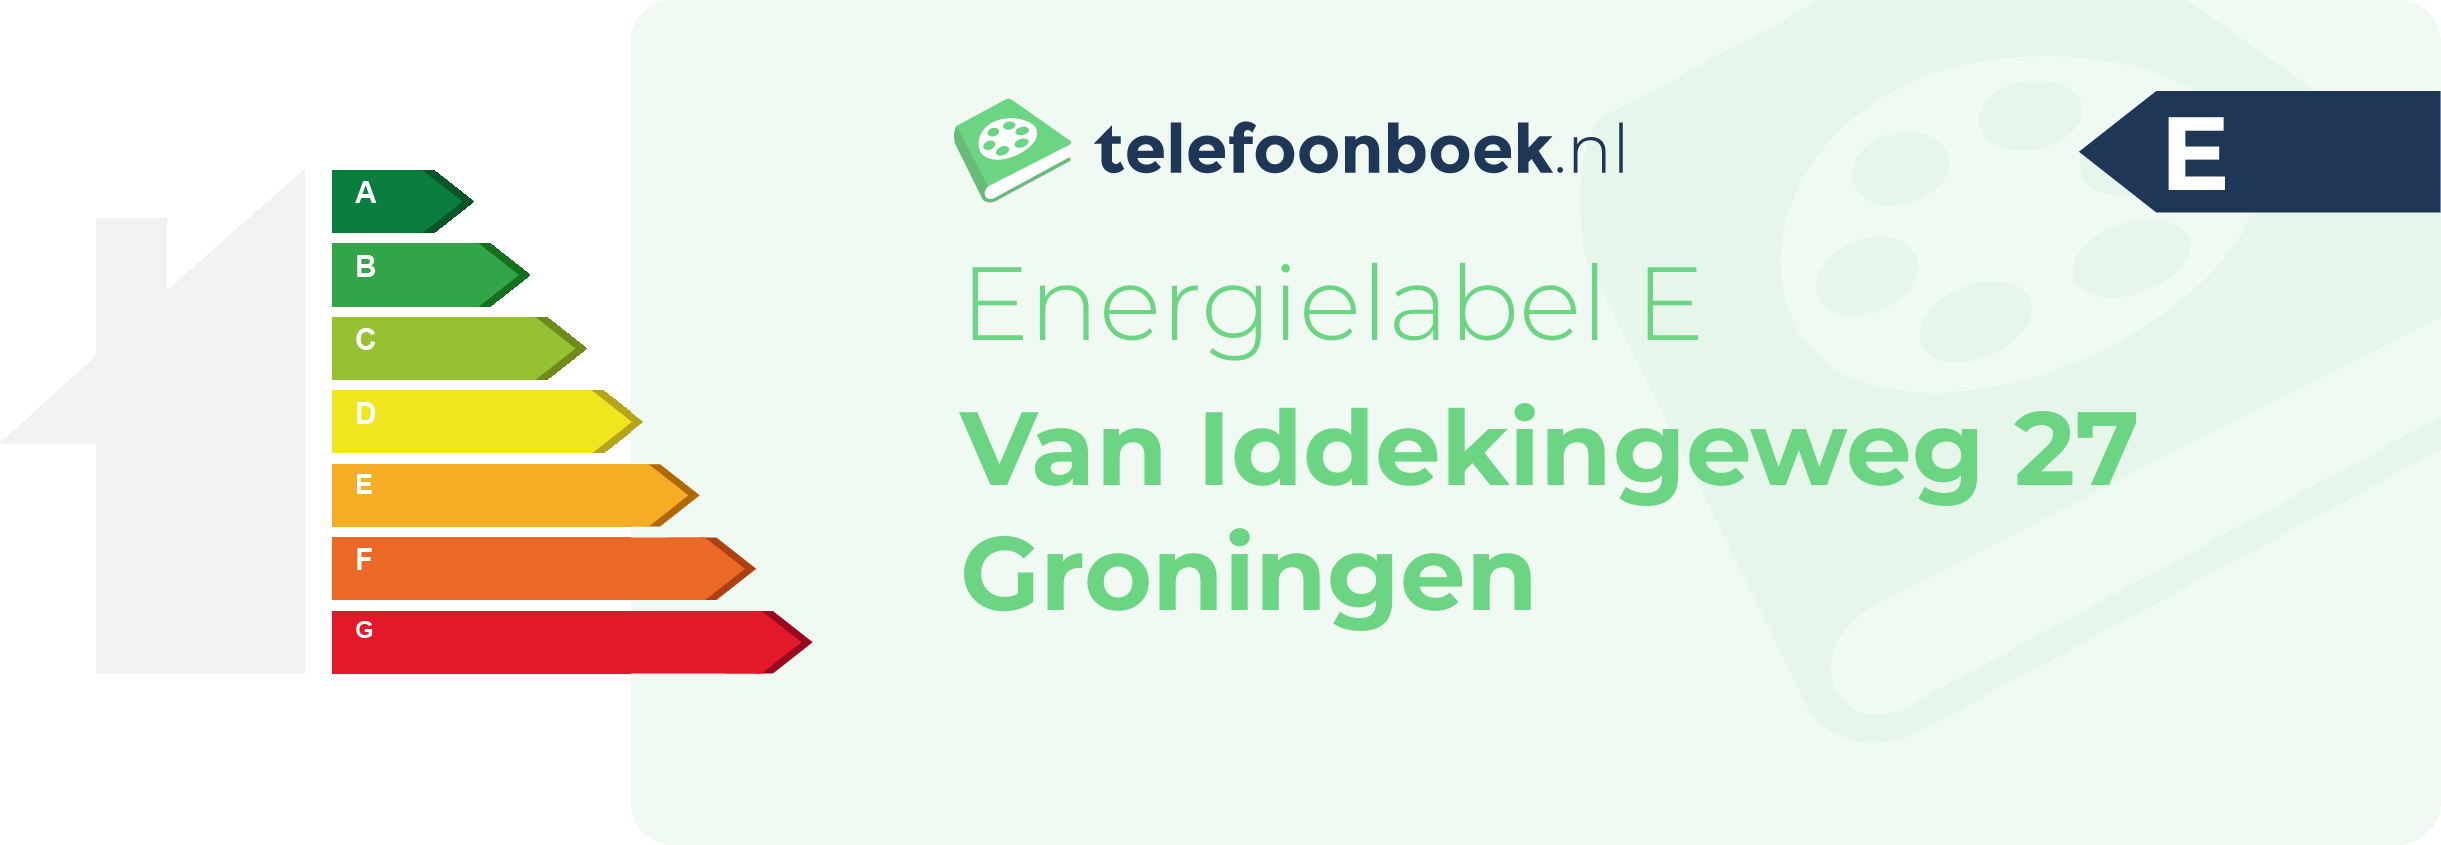 Energielabel Van Iddekingeweg 27 Groningen